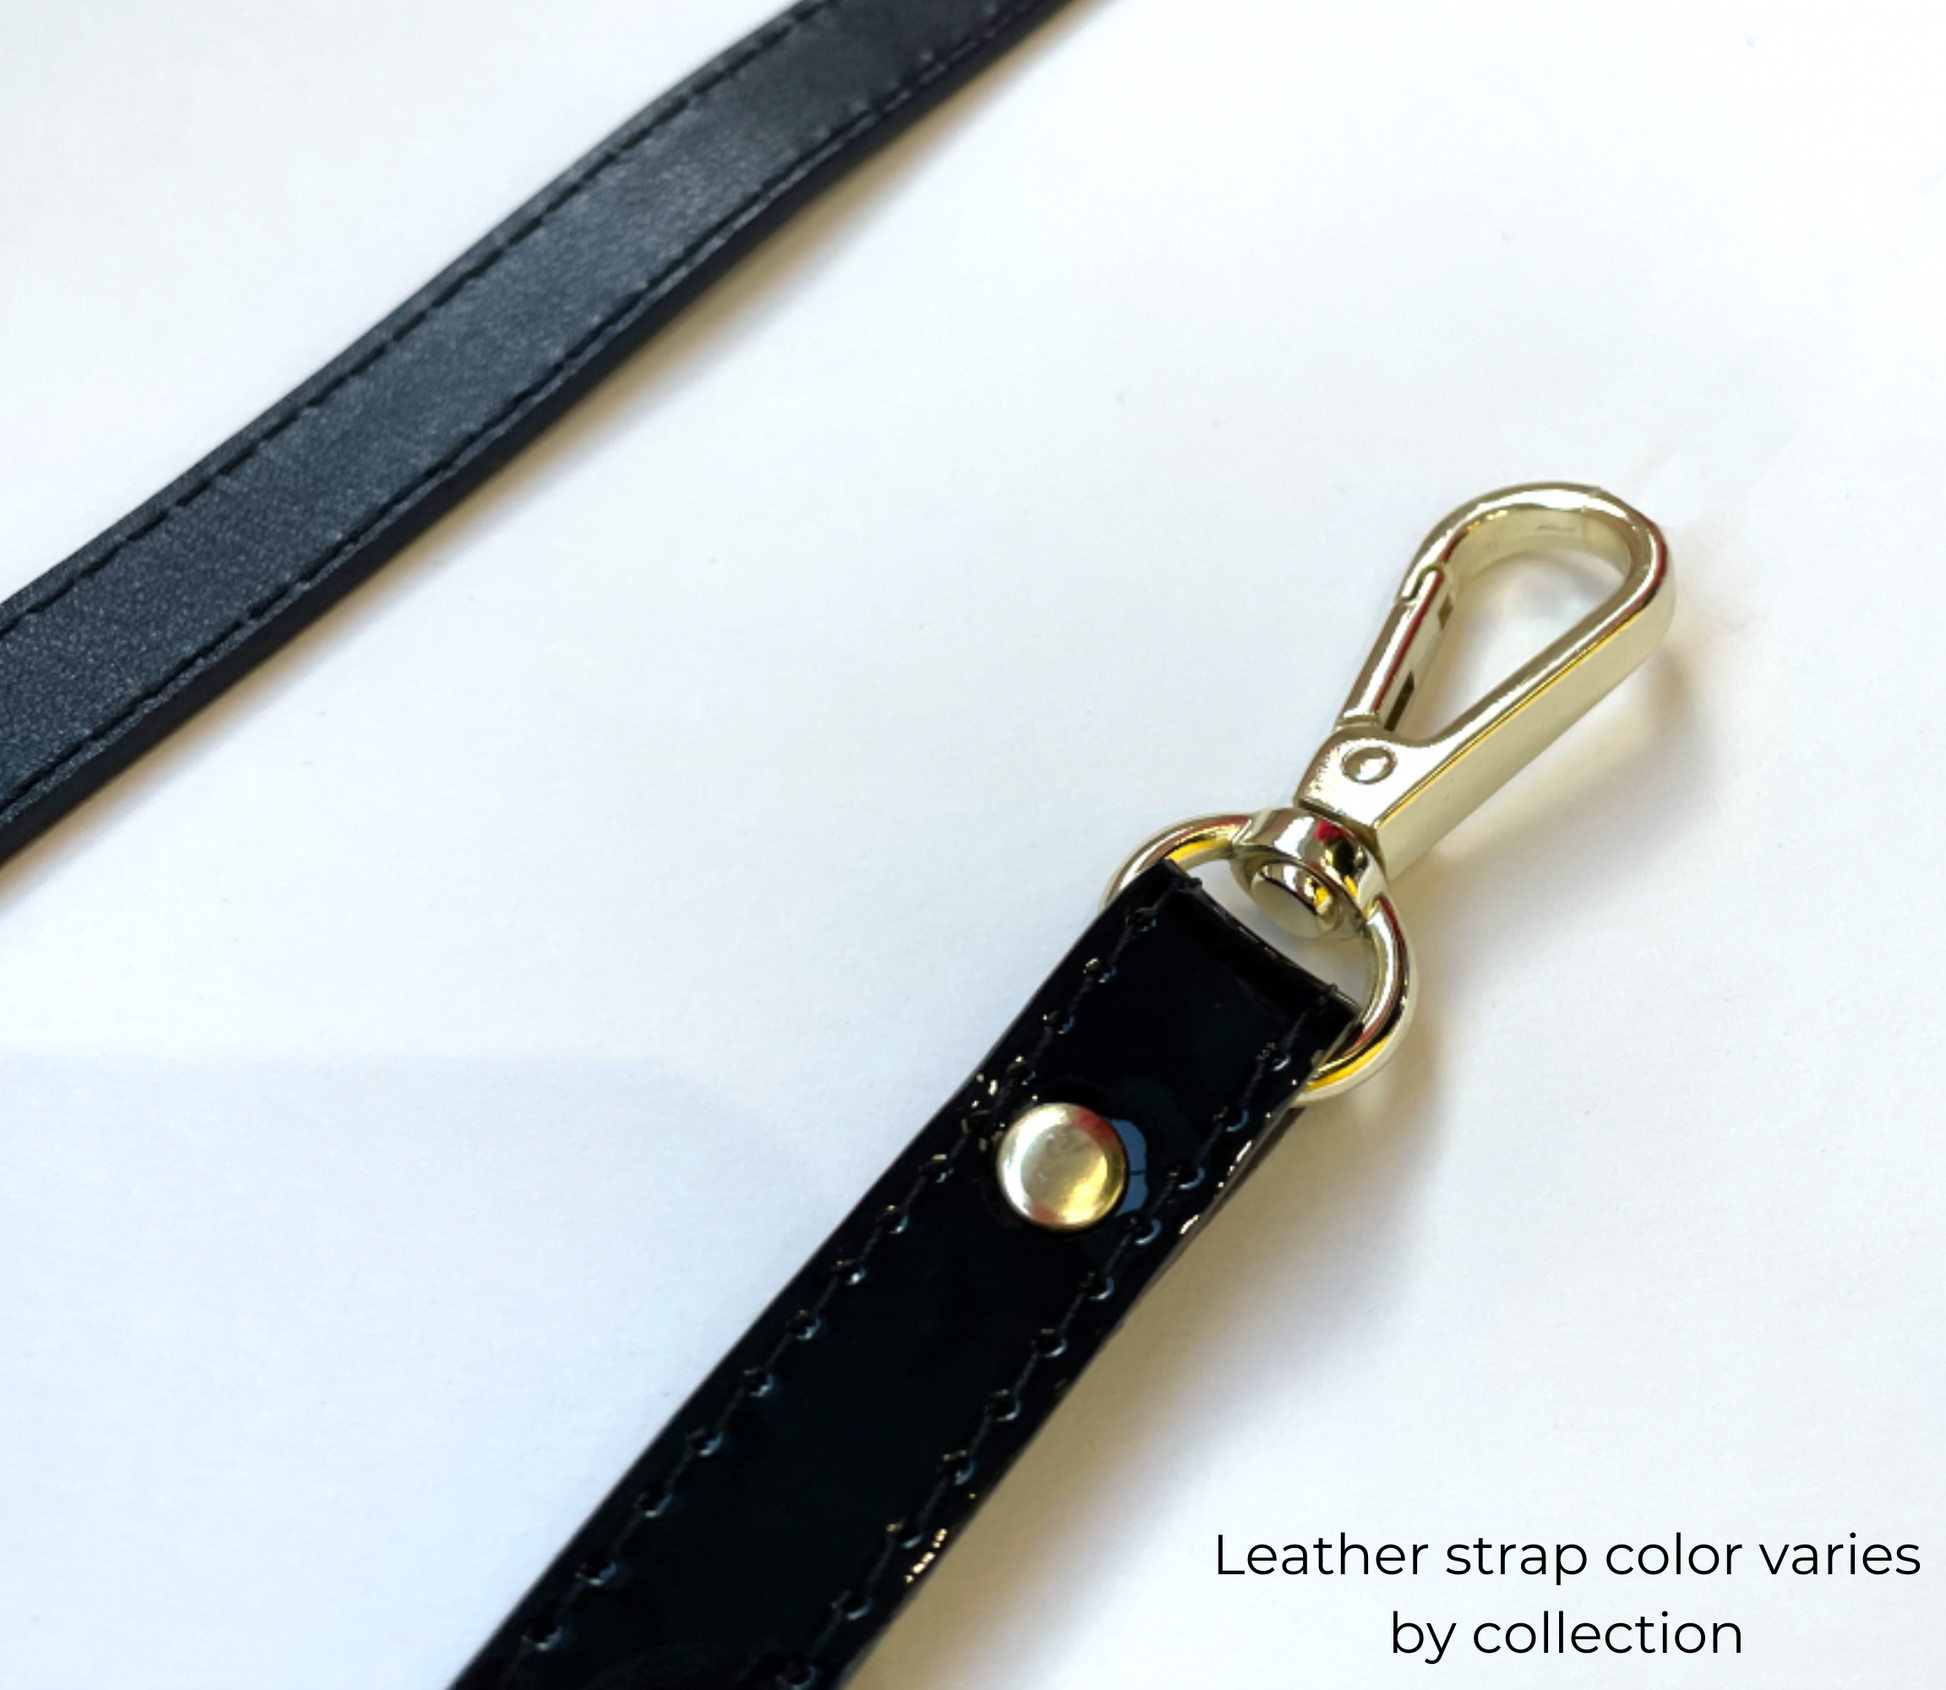 Cavalinho Unique Handbag - Black & Honey - 18260157.22-Strap0243.01